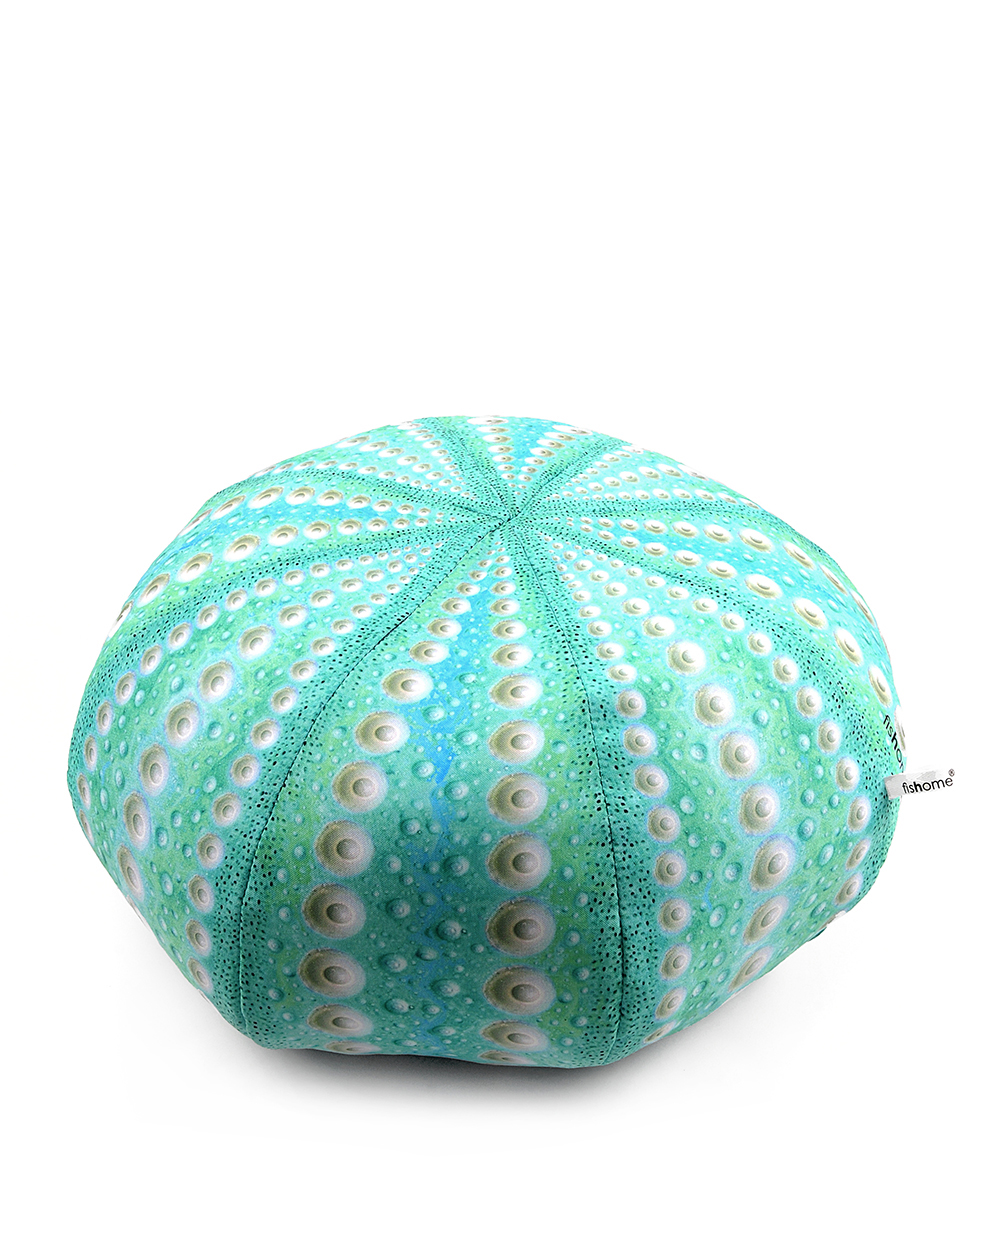 urchin pillow / αχινός μαξιλάρι